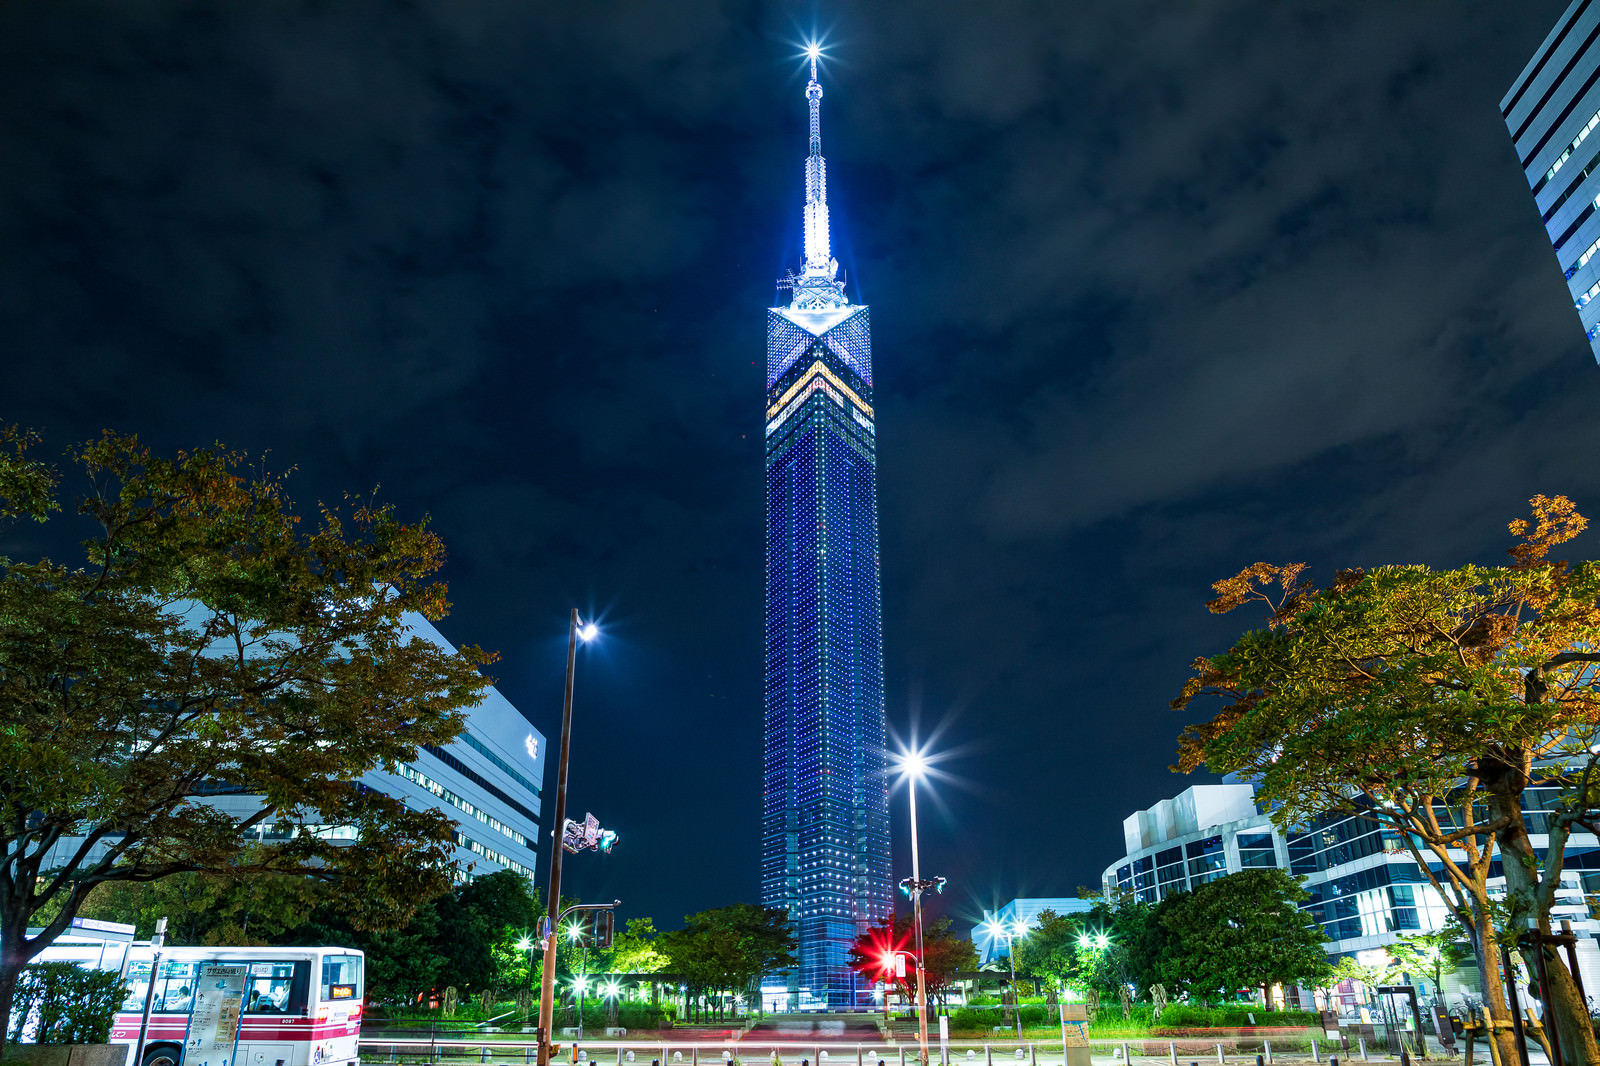 「ライトアップされる夜の福岡タワー | フリー素材のぱくたそ」の写真